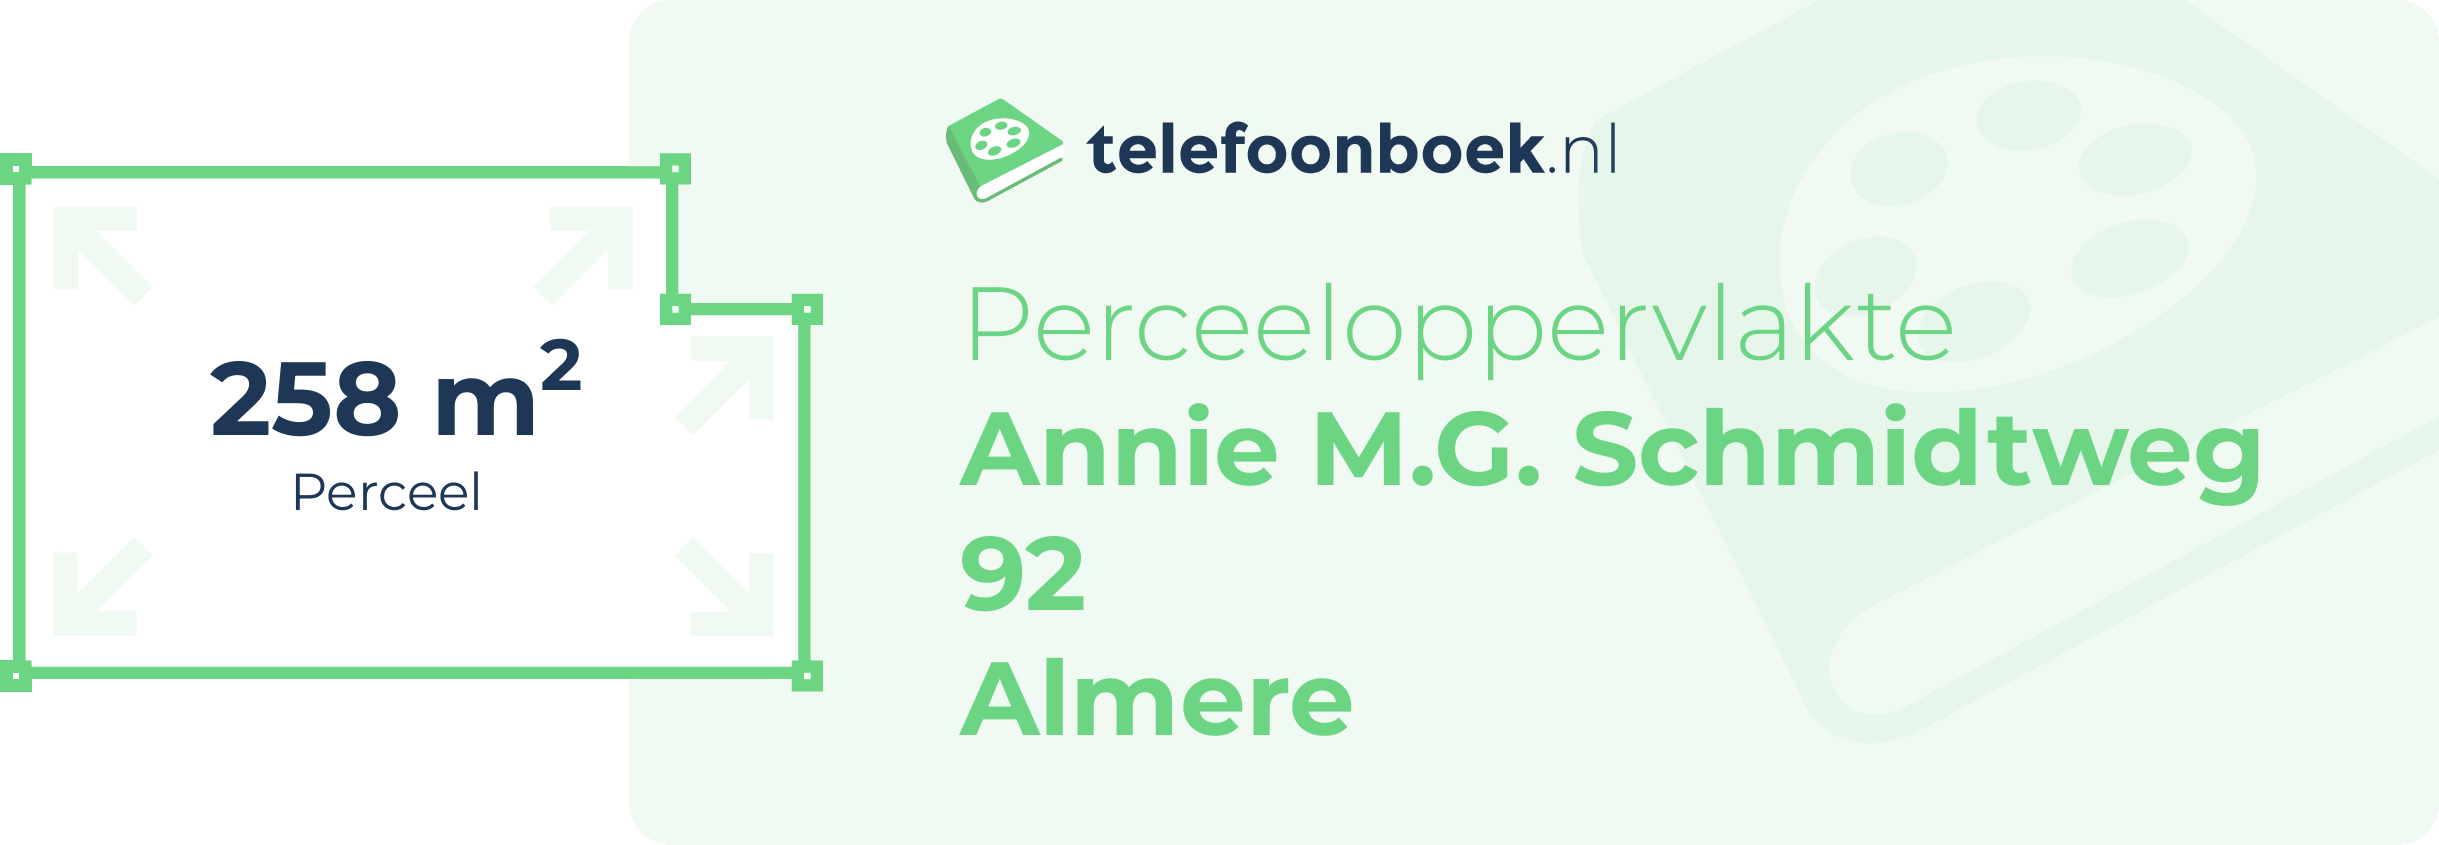 Perceeloppervlakte Annie M.G. Schmidtweg 92 Almere